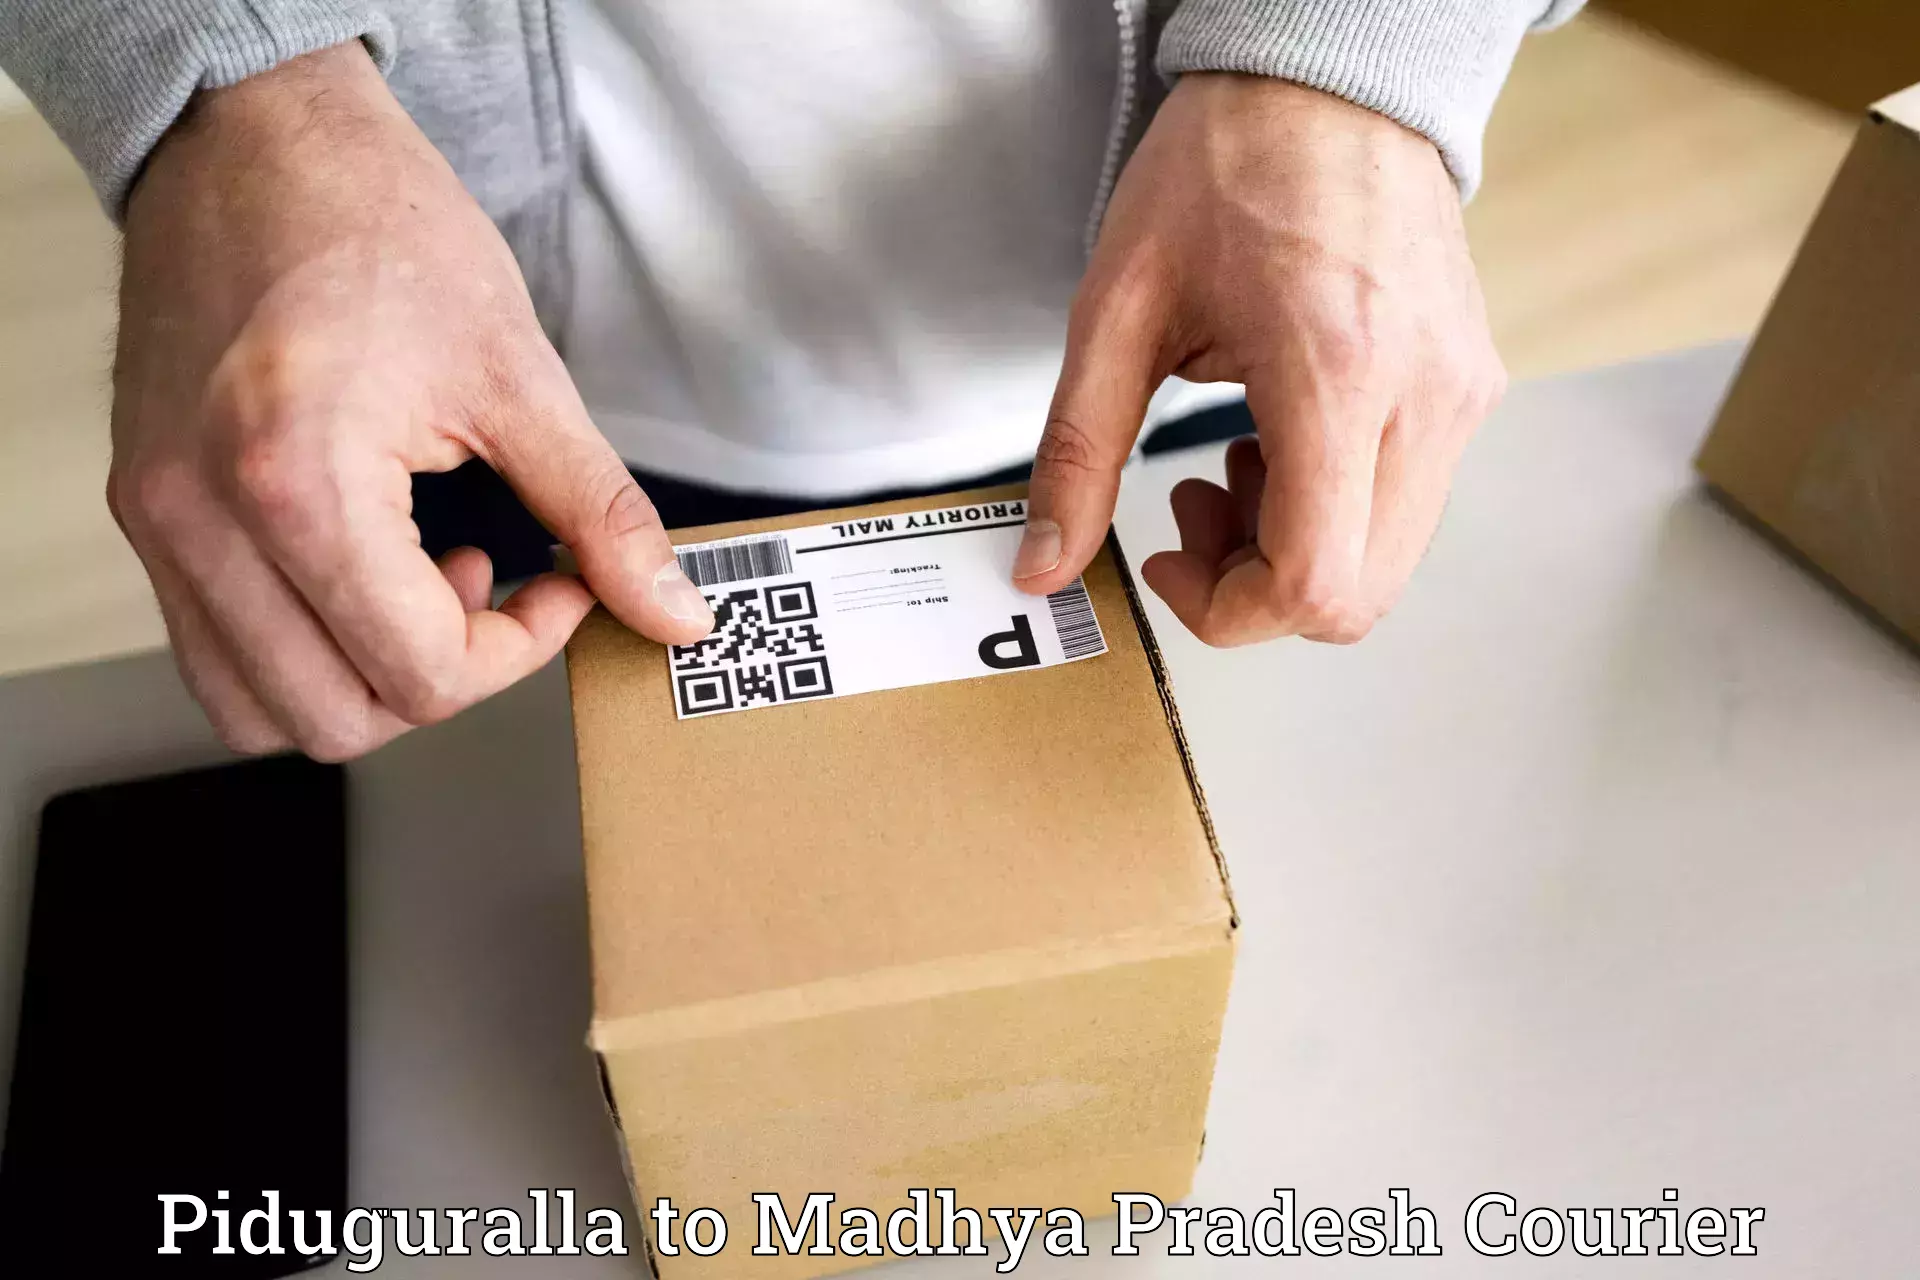 Premium delivery services Piduguralla to Bhopal